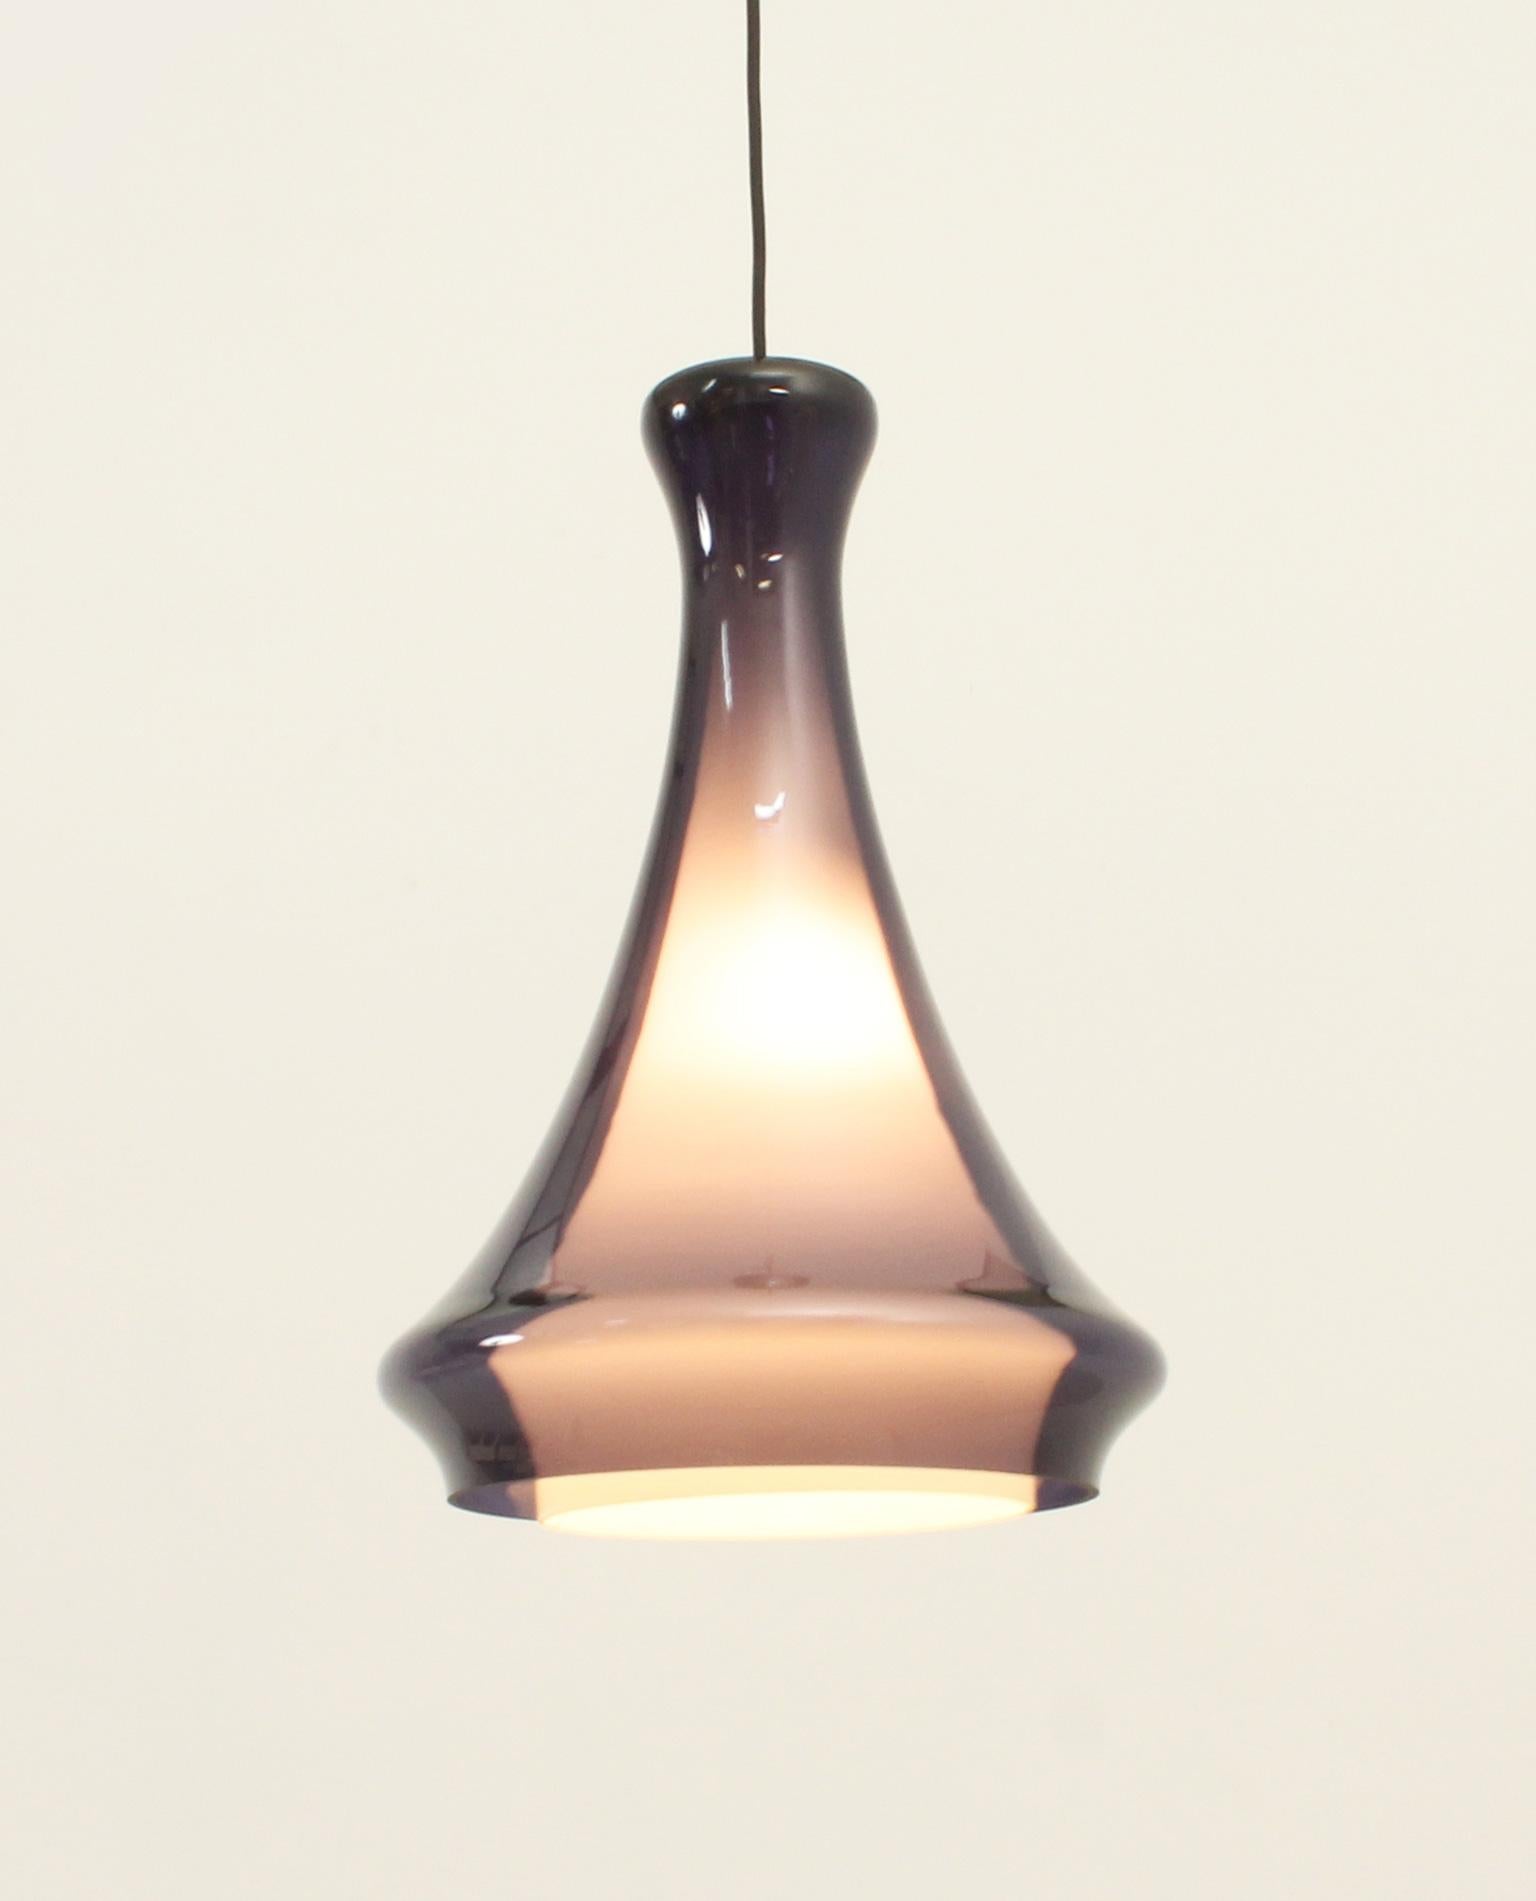 Lampe suspendue modèle Heliotrop conçue dans les années 1960 par Jo Hammerborg pour Fog & Mørup, Danemark. Abat-jour double en verre transparent lilas à l'extérieur et en verre opalin blanc à l'intérieur.